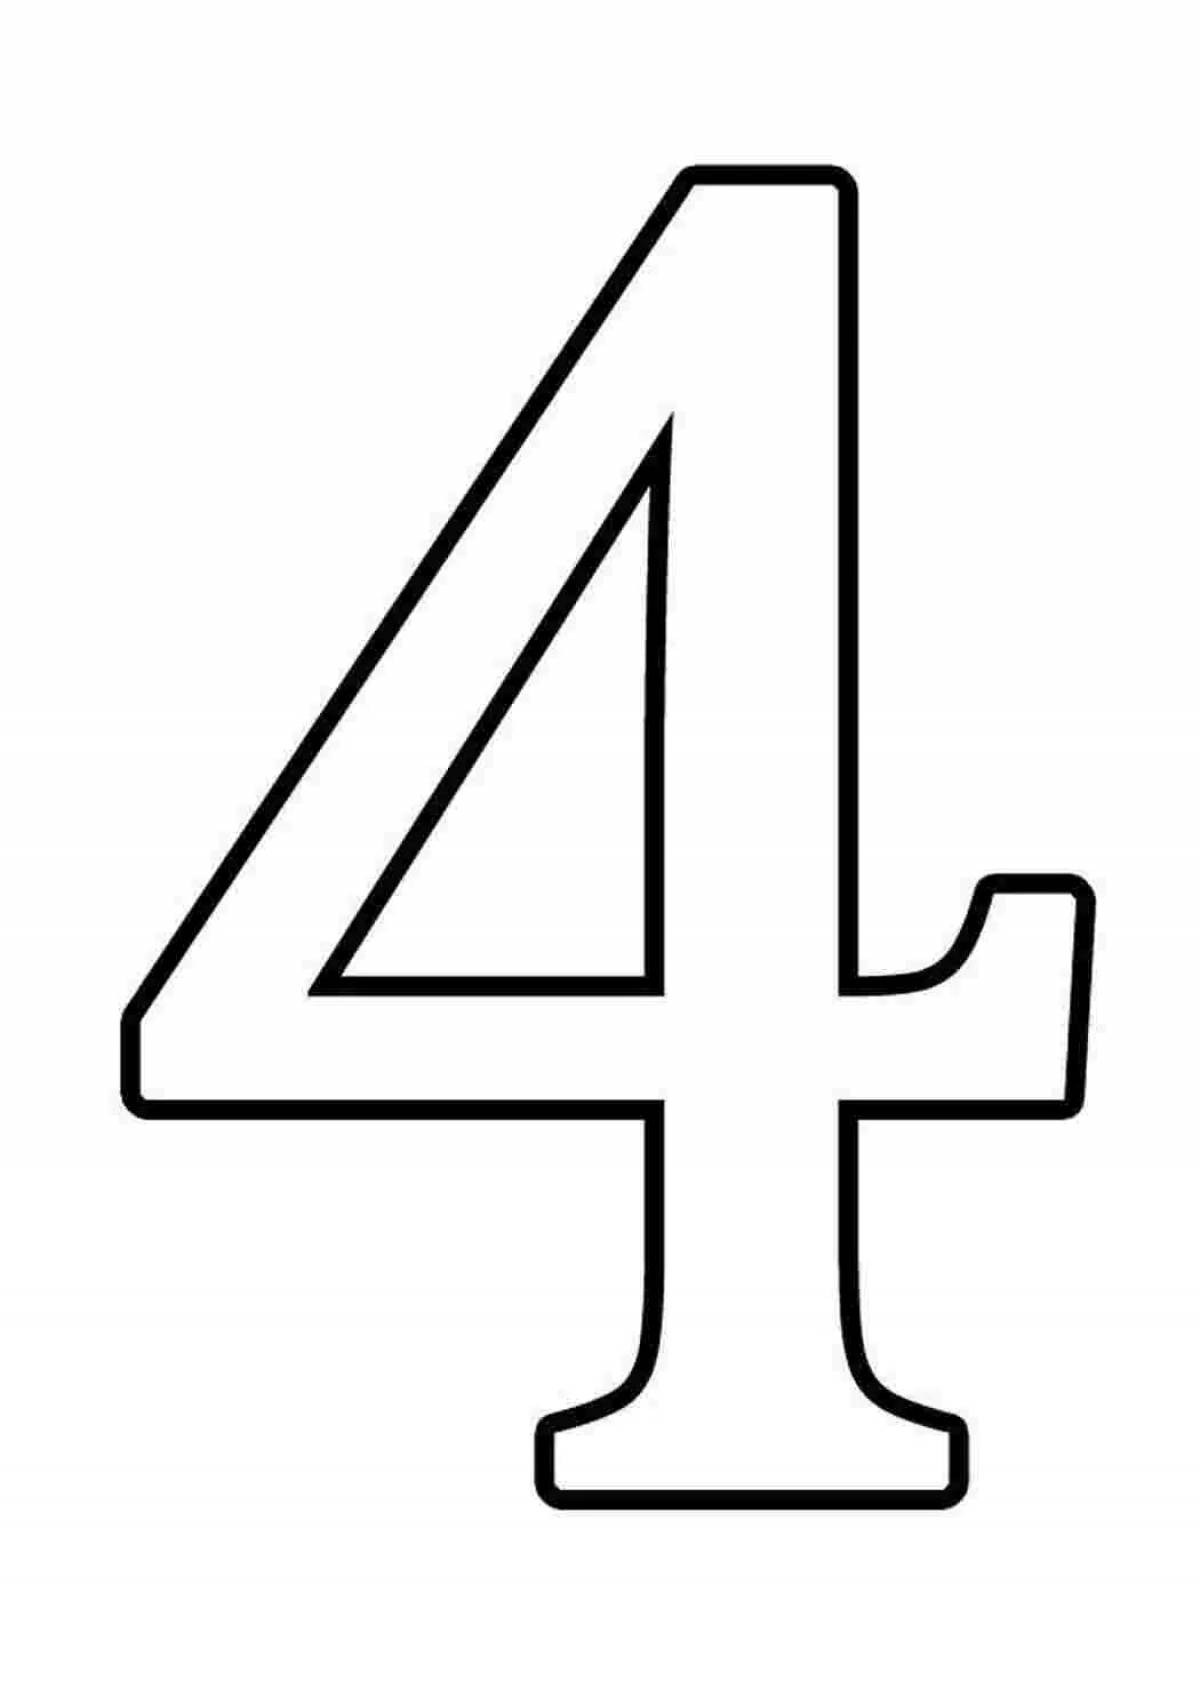 Four #4